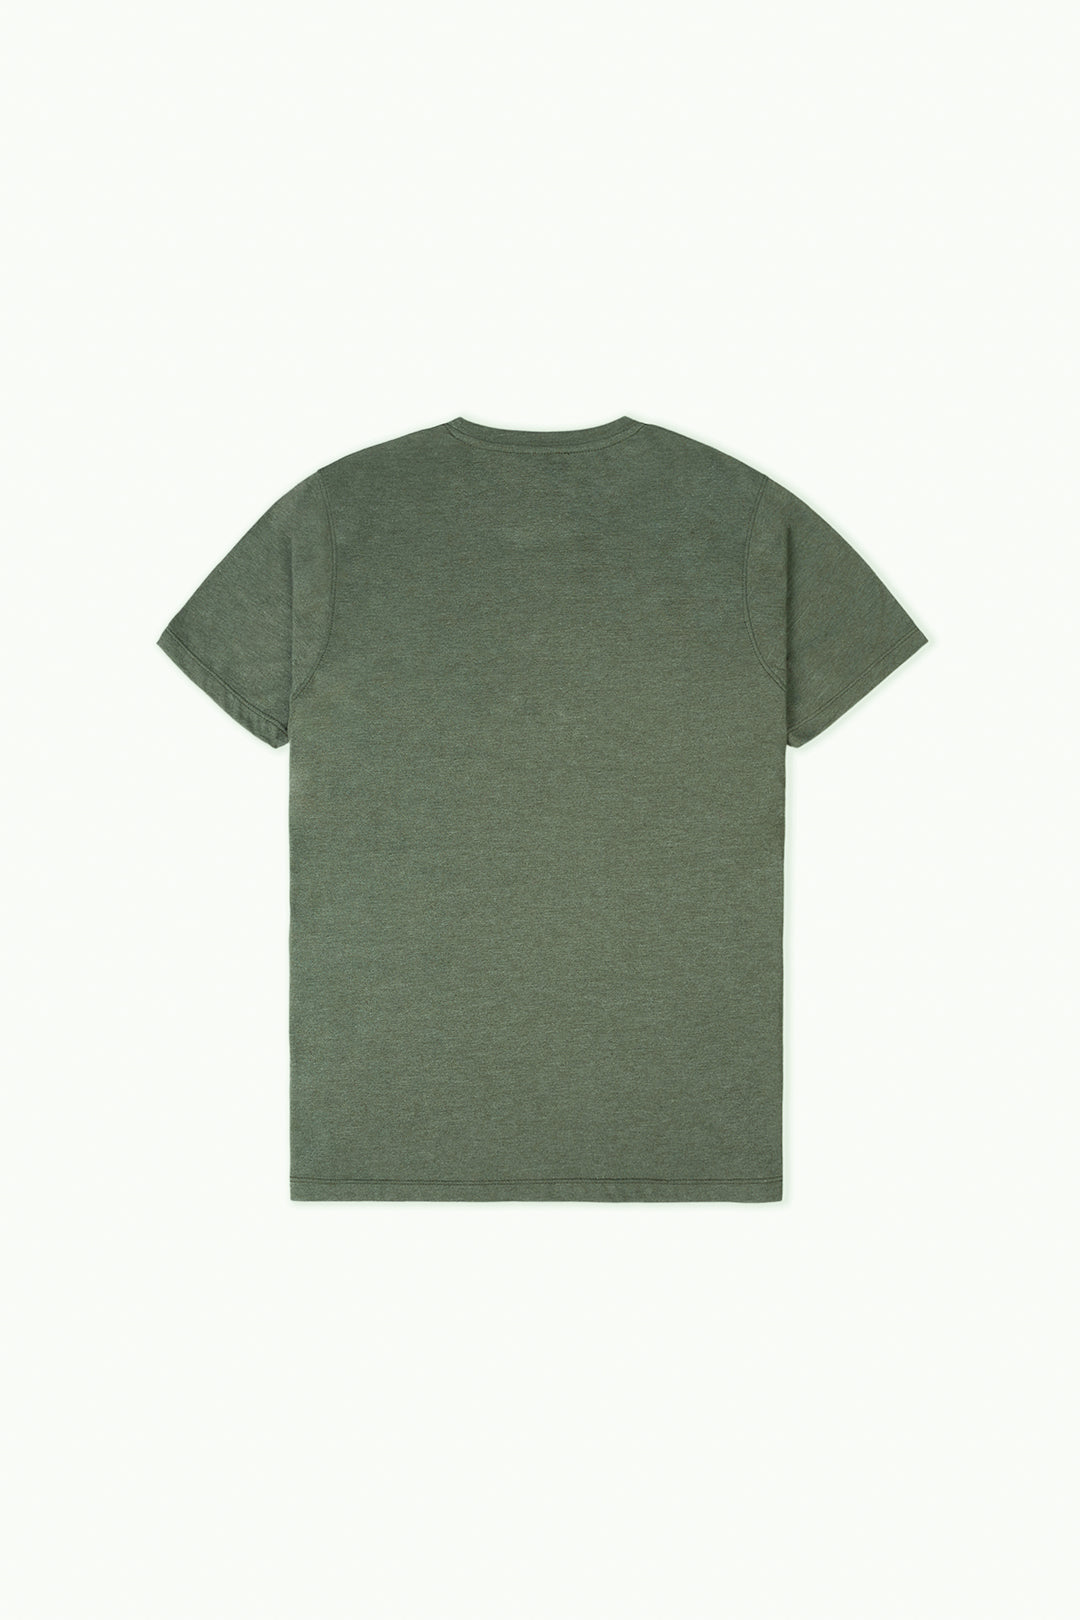 Olive Green Men's Basic T-Shirt